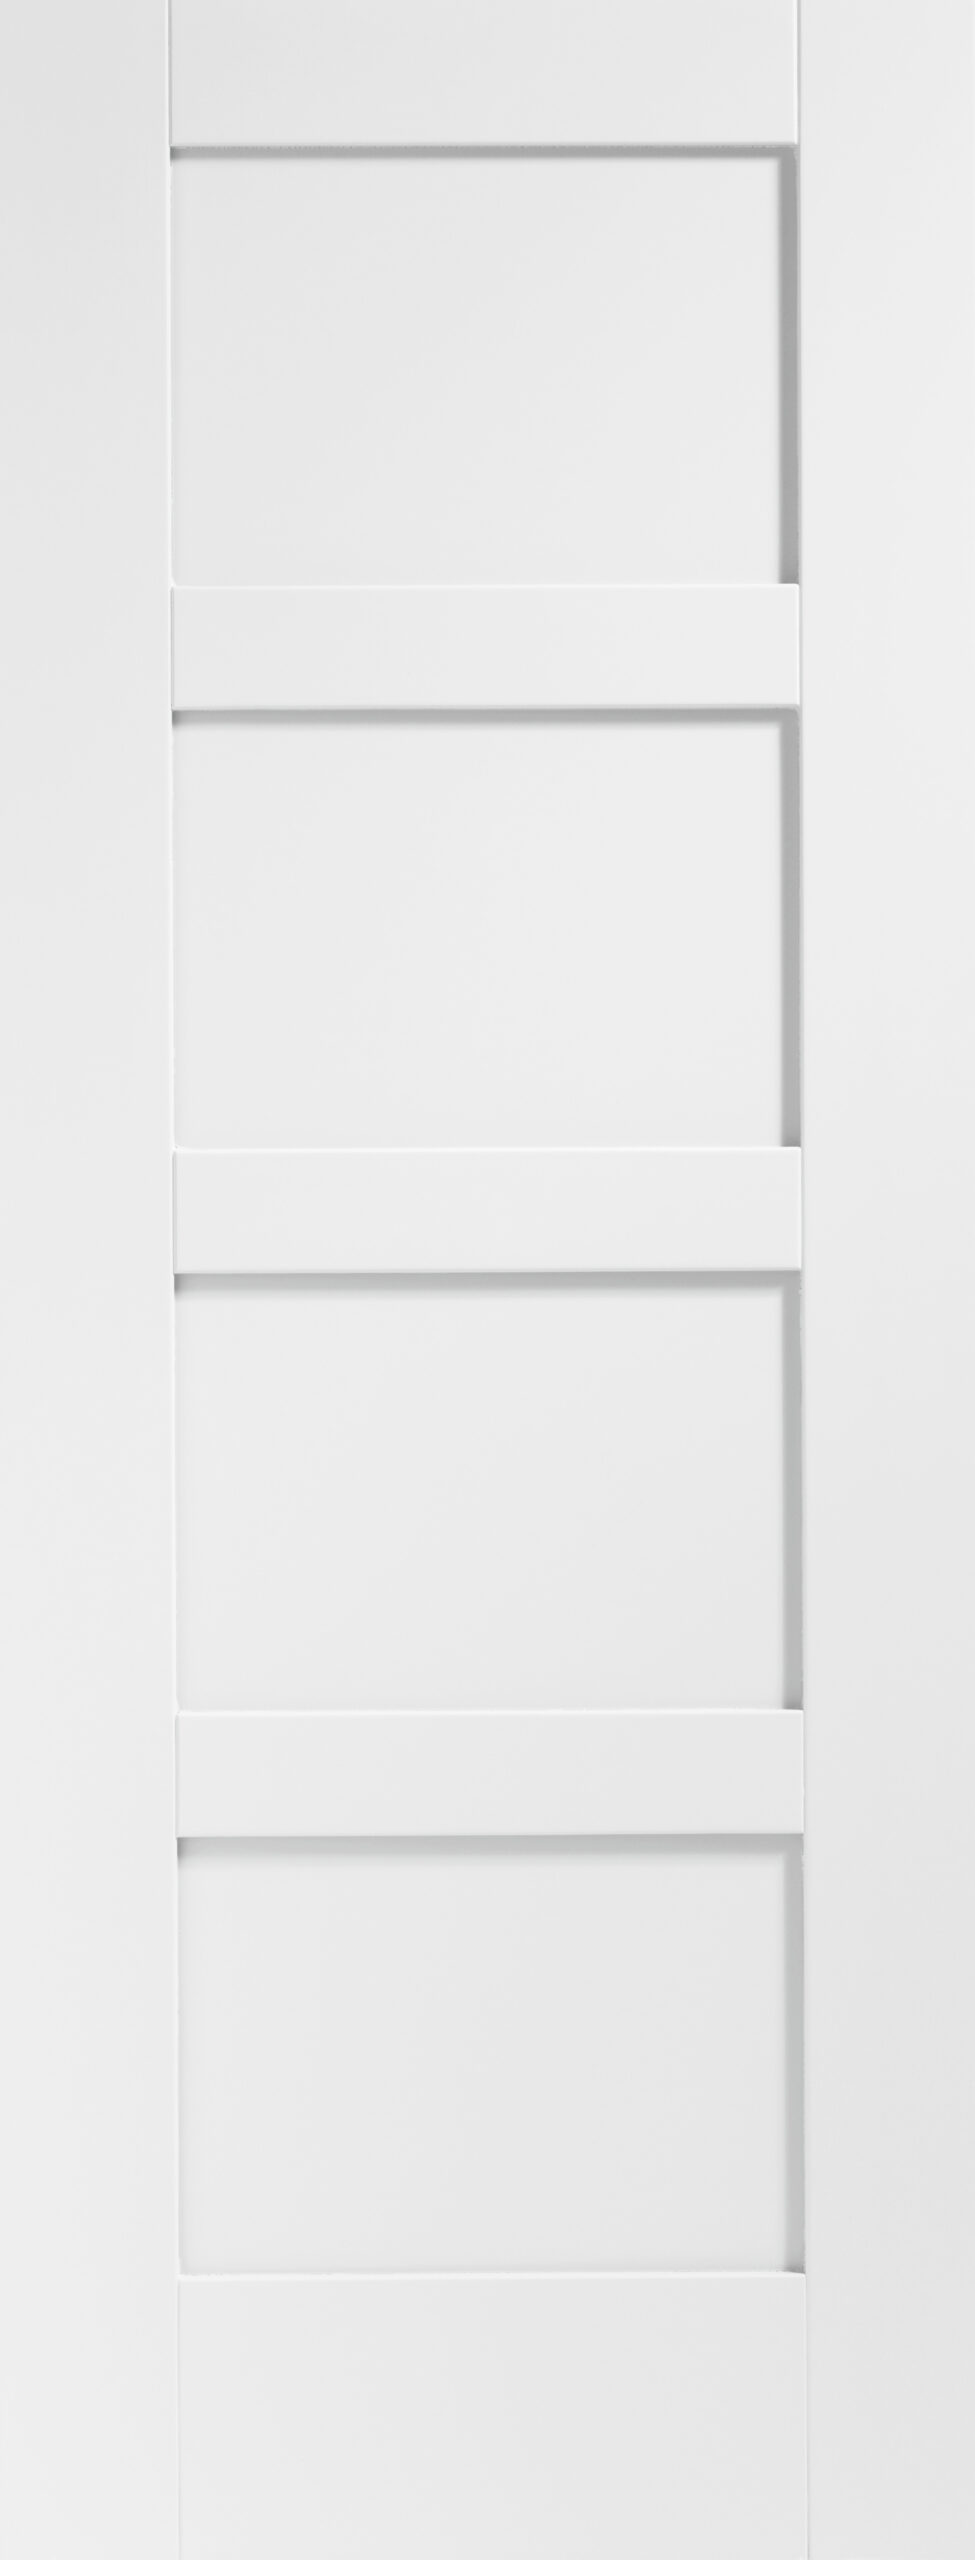 Shaker 4 Panel Internal White Primed Fire Door – White Primed, 1981 x 686 x 44 mm